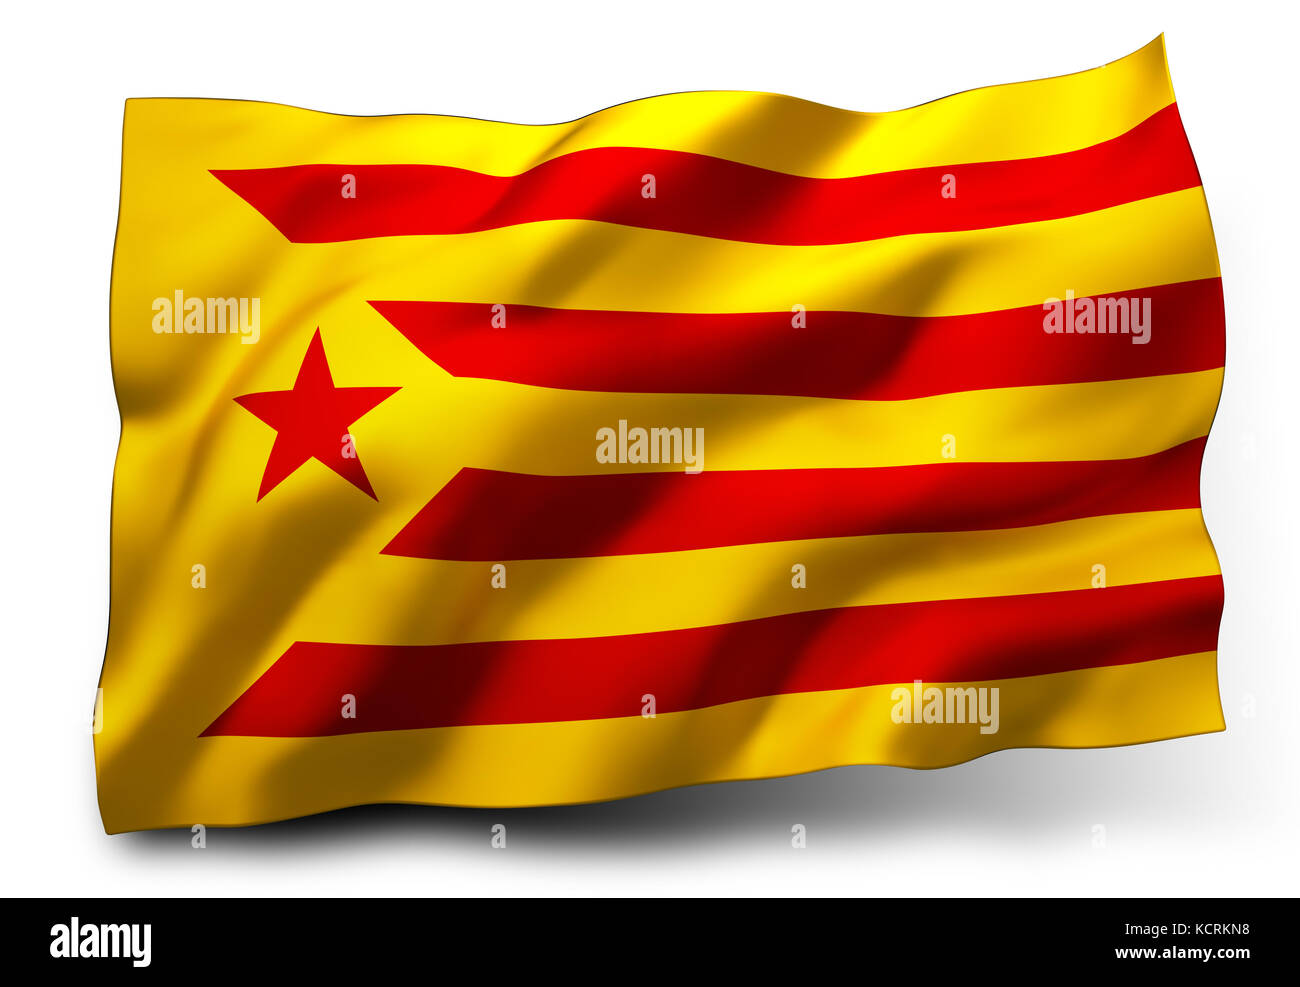 ESTELADA drapeau de Catalogne ondulant dans le vent, isolé sur fond blanc - illustration 3D. Banque D'Images